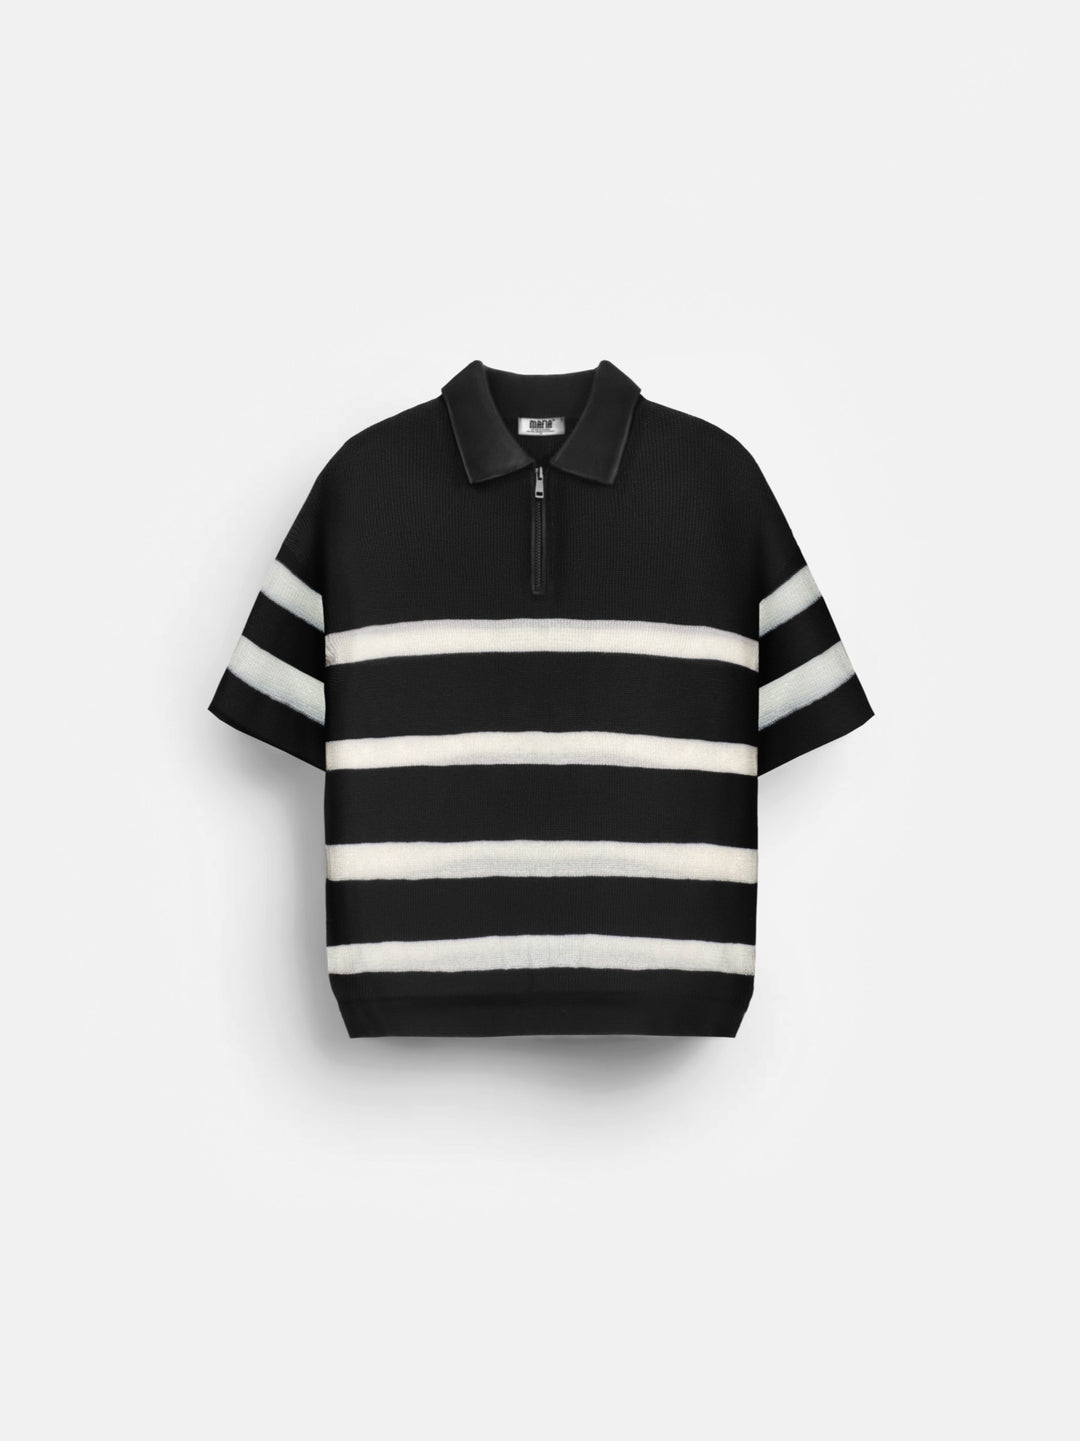 Regular Knit Zipper T-shirt - Black